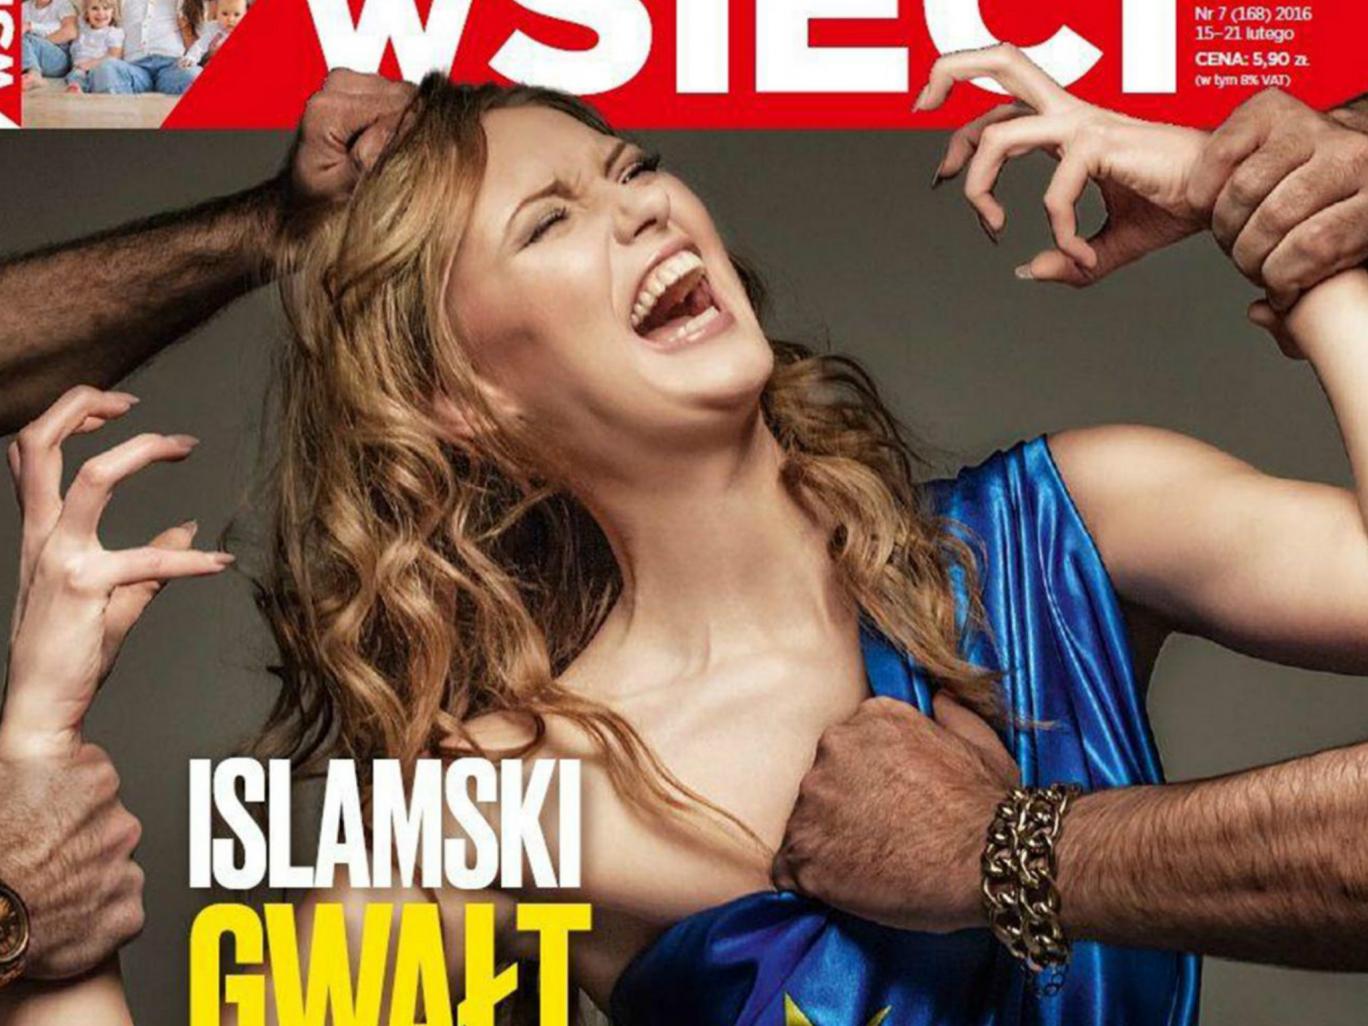 На цьому тижні польський журнал wSieci виніс на обкладинку заголовок 